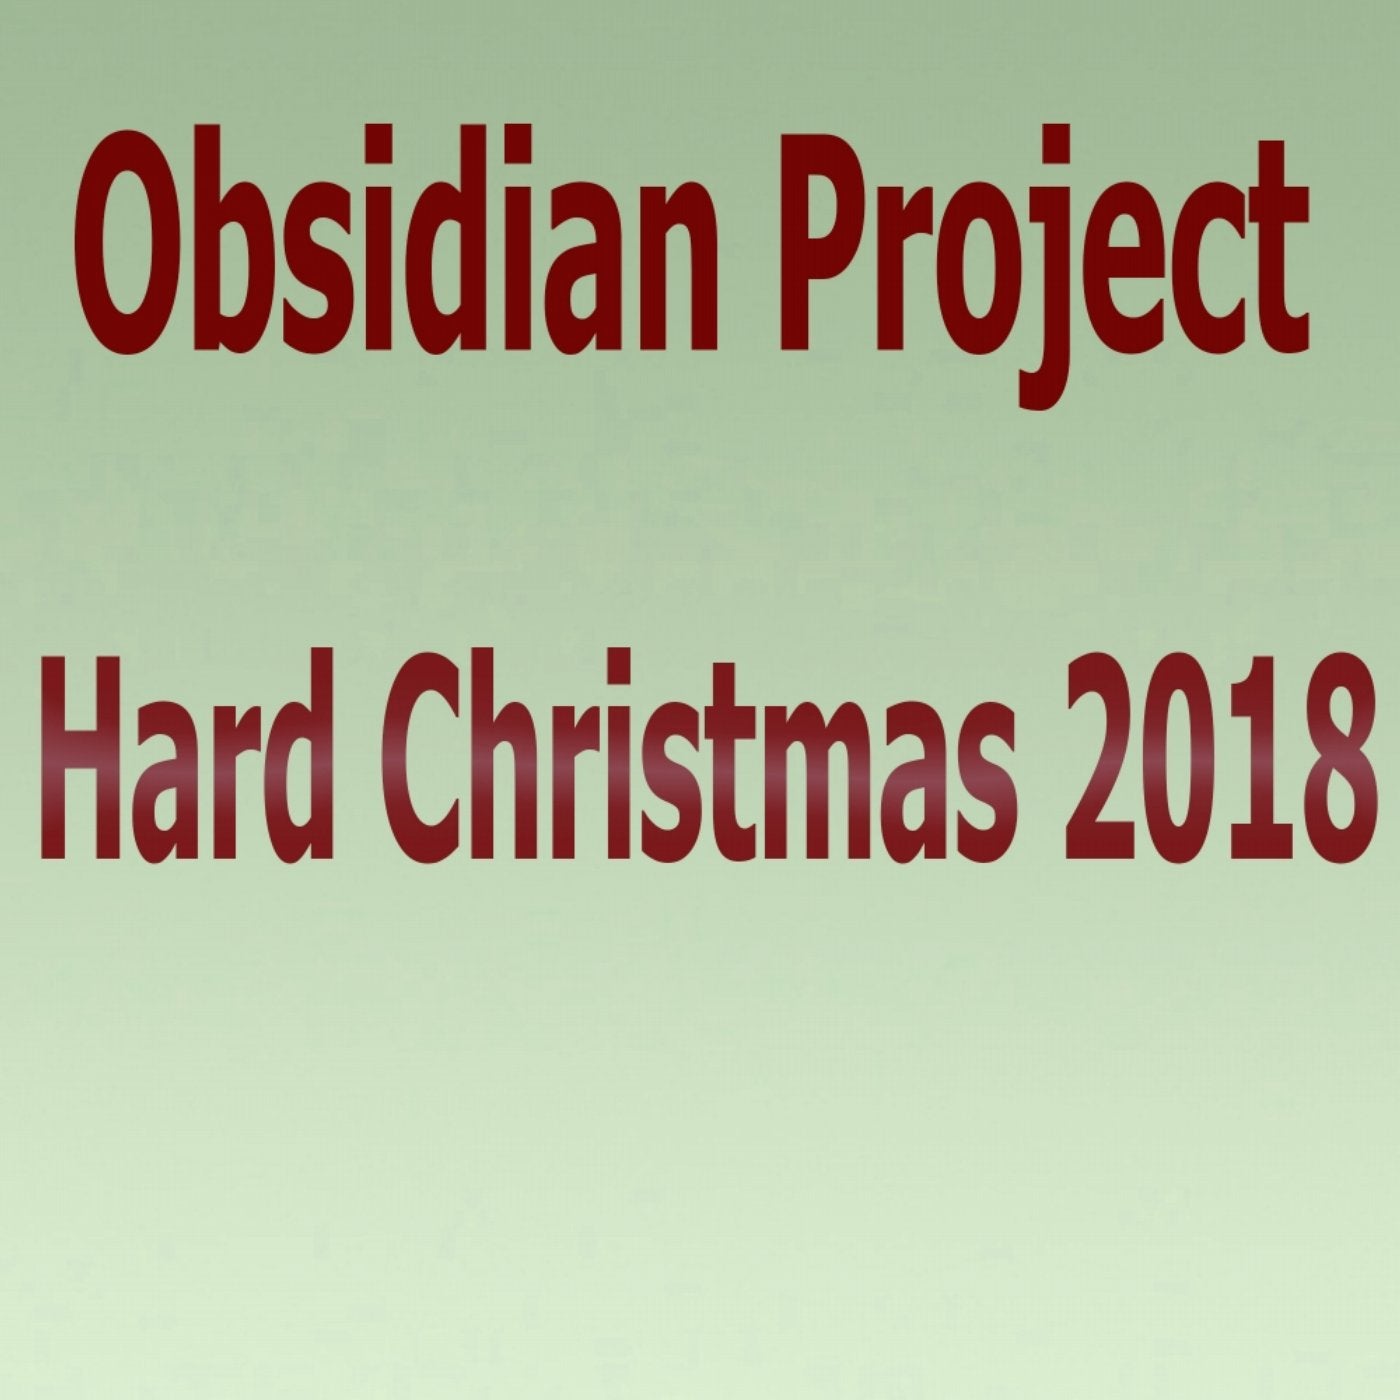 Hard Christmas 2018